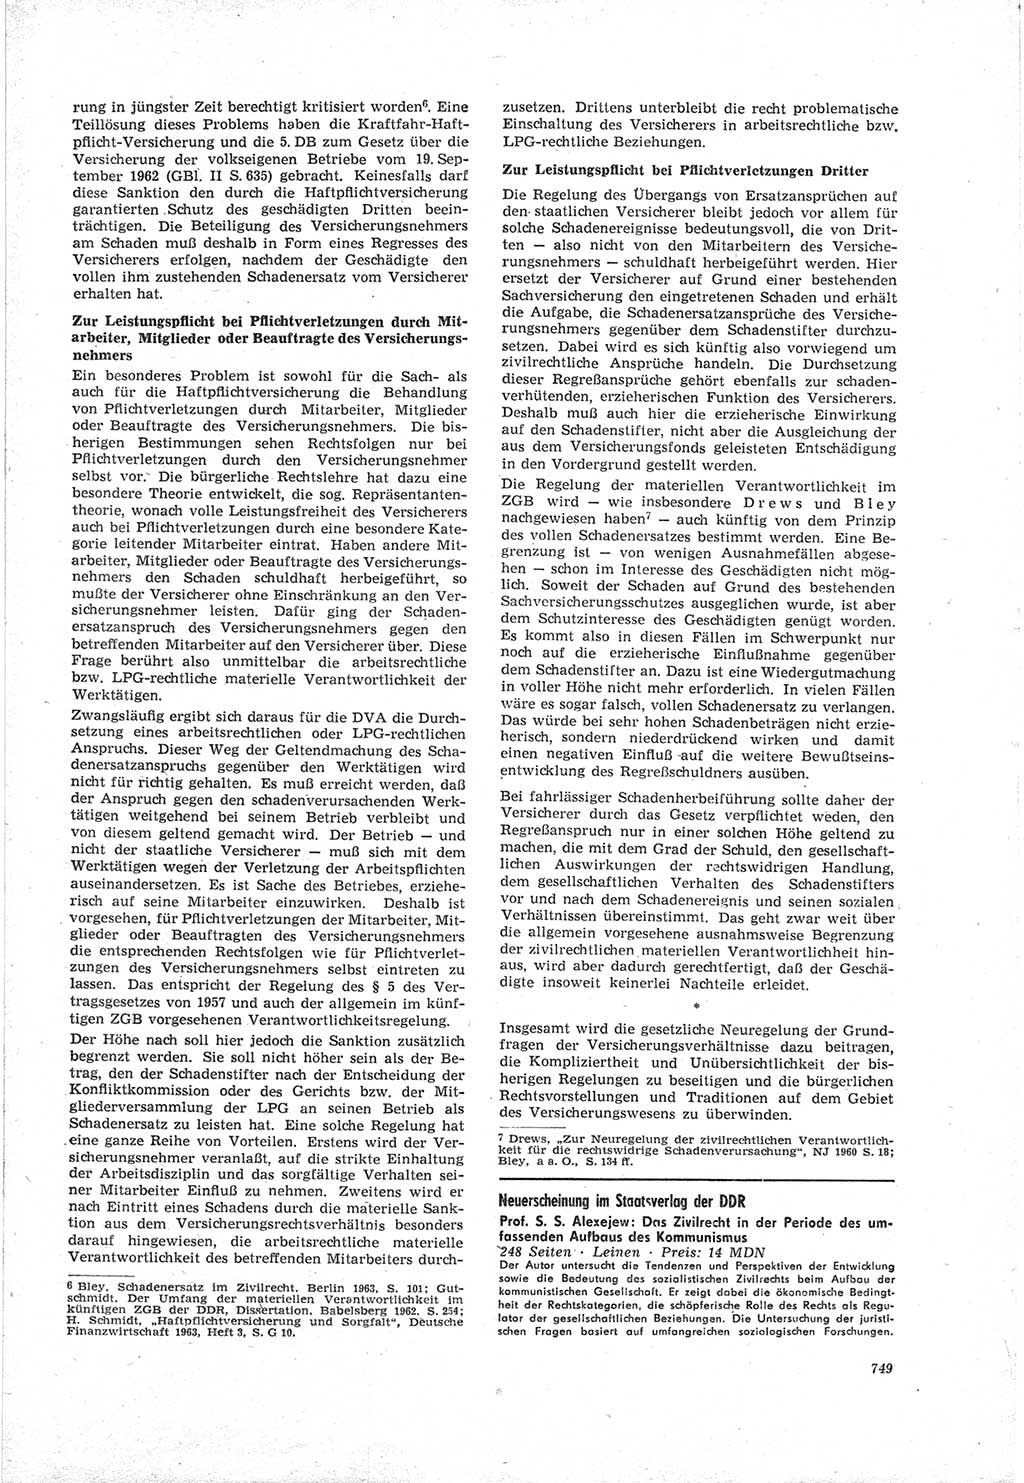 Neue Justiz (NJ), Zeitschrift für Recht und Rechtswissenschaft [Deutsche Demokratische Republik (DDR)], 18. Jahrgang 1964, Seite 749 (NJ DDR 1964, S. 749)